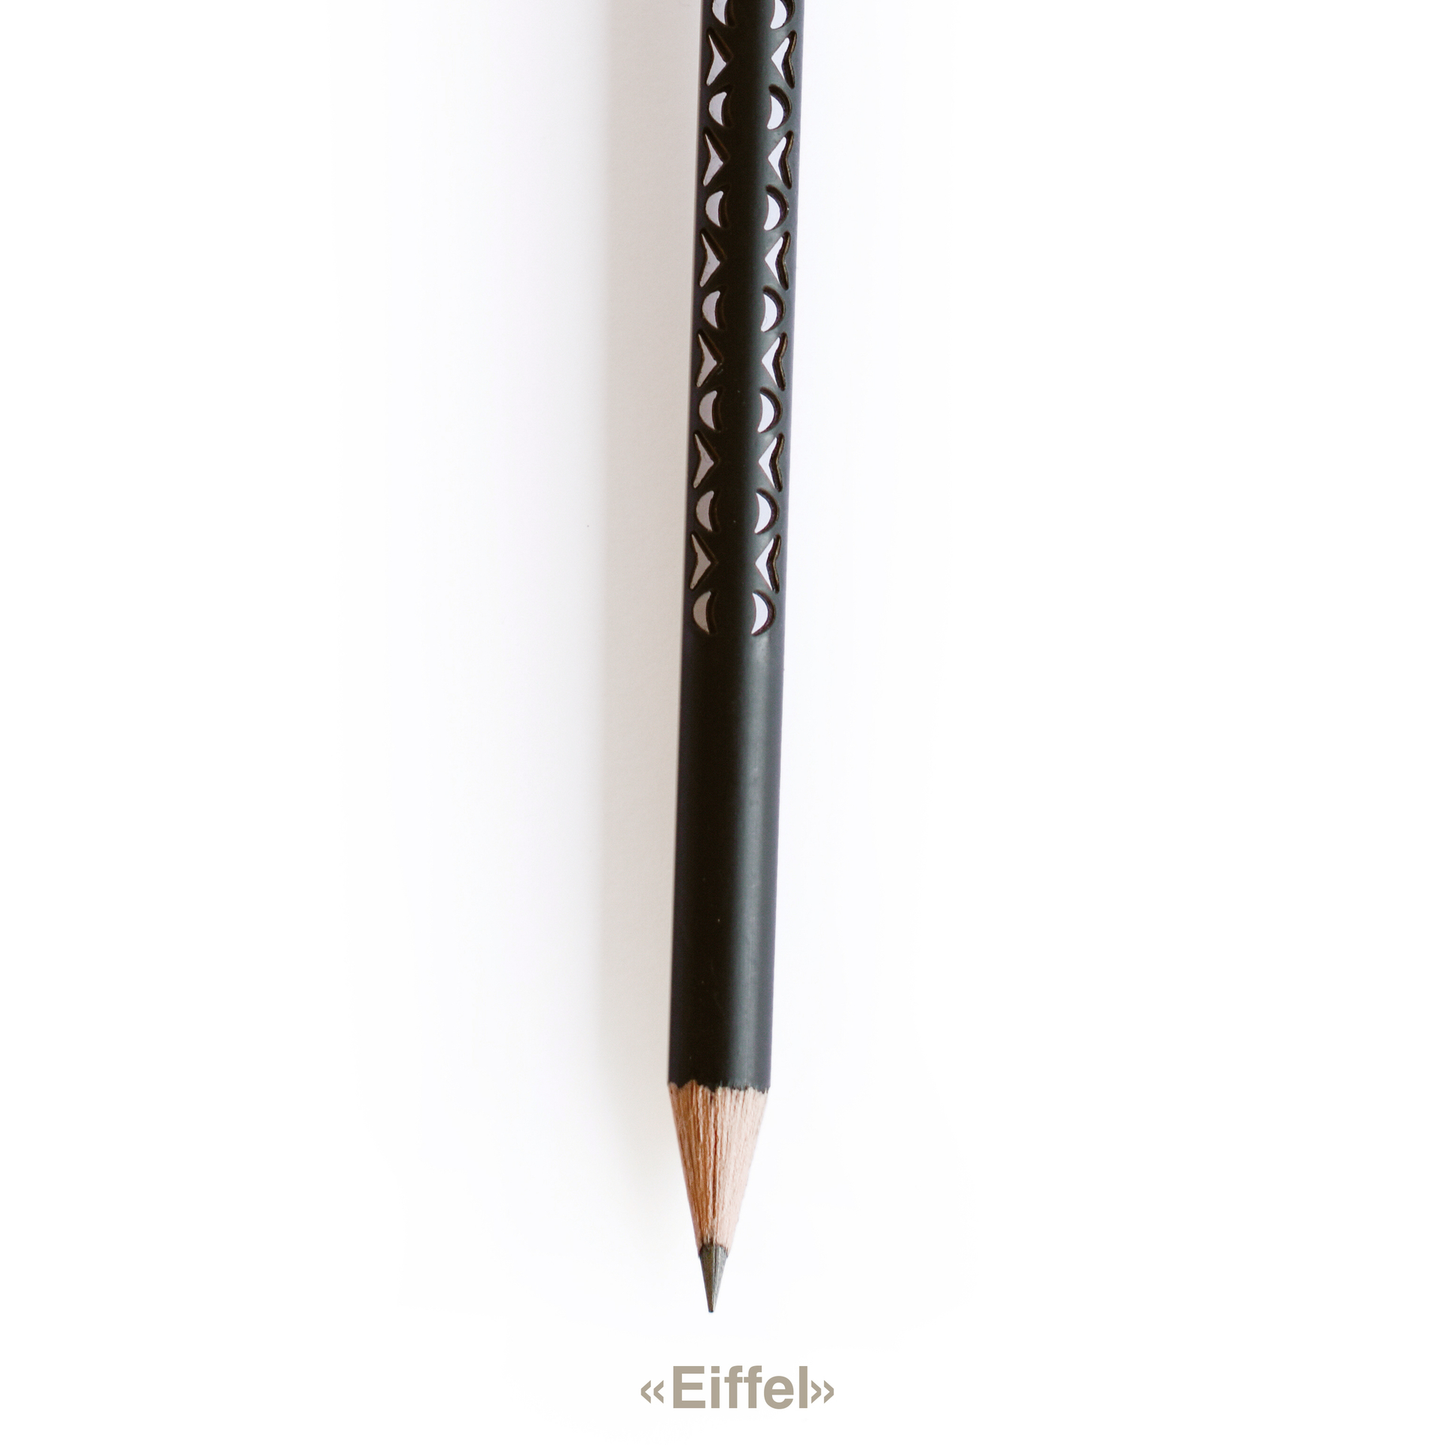 tät-tat - Bleistifte / Pencils 6 pieces